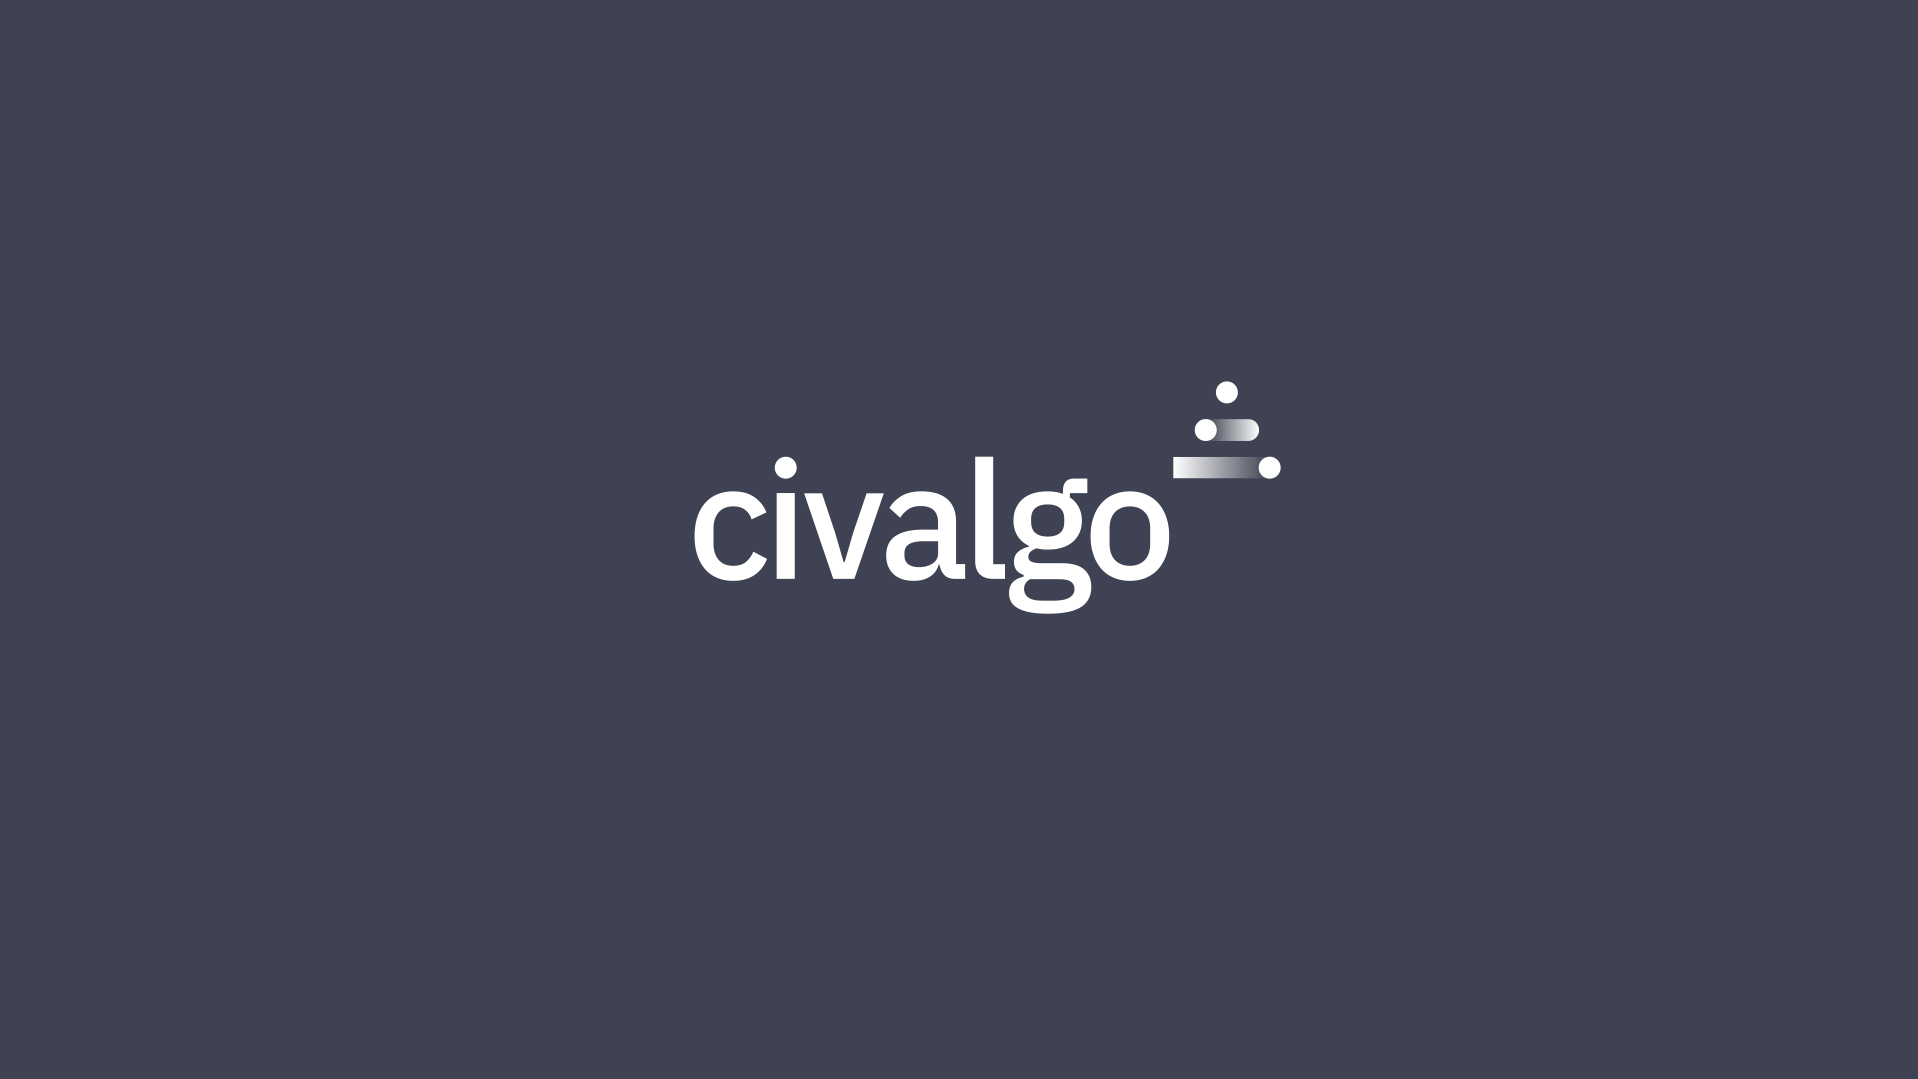 images/04-Civalgo-Logo-Animation.gif